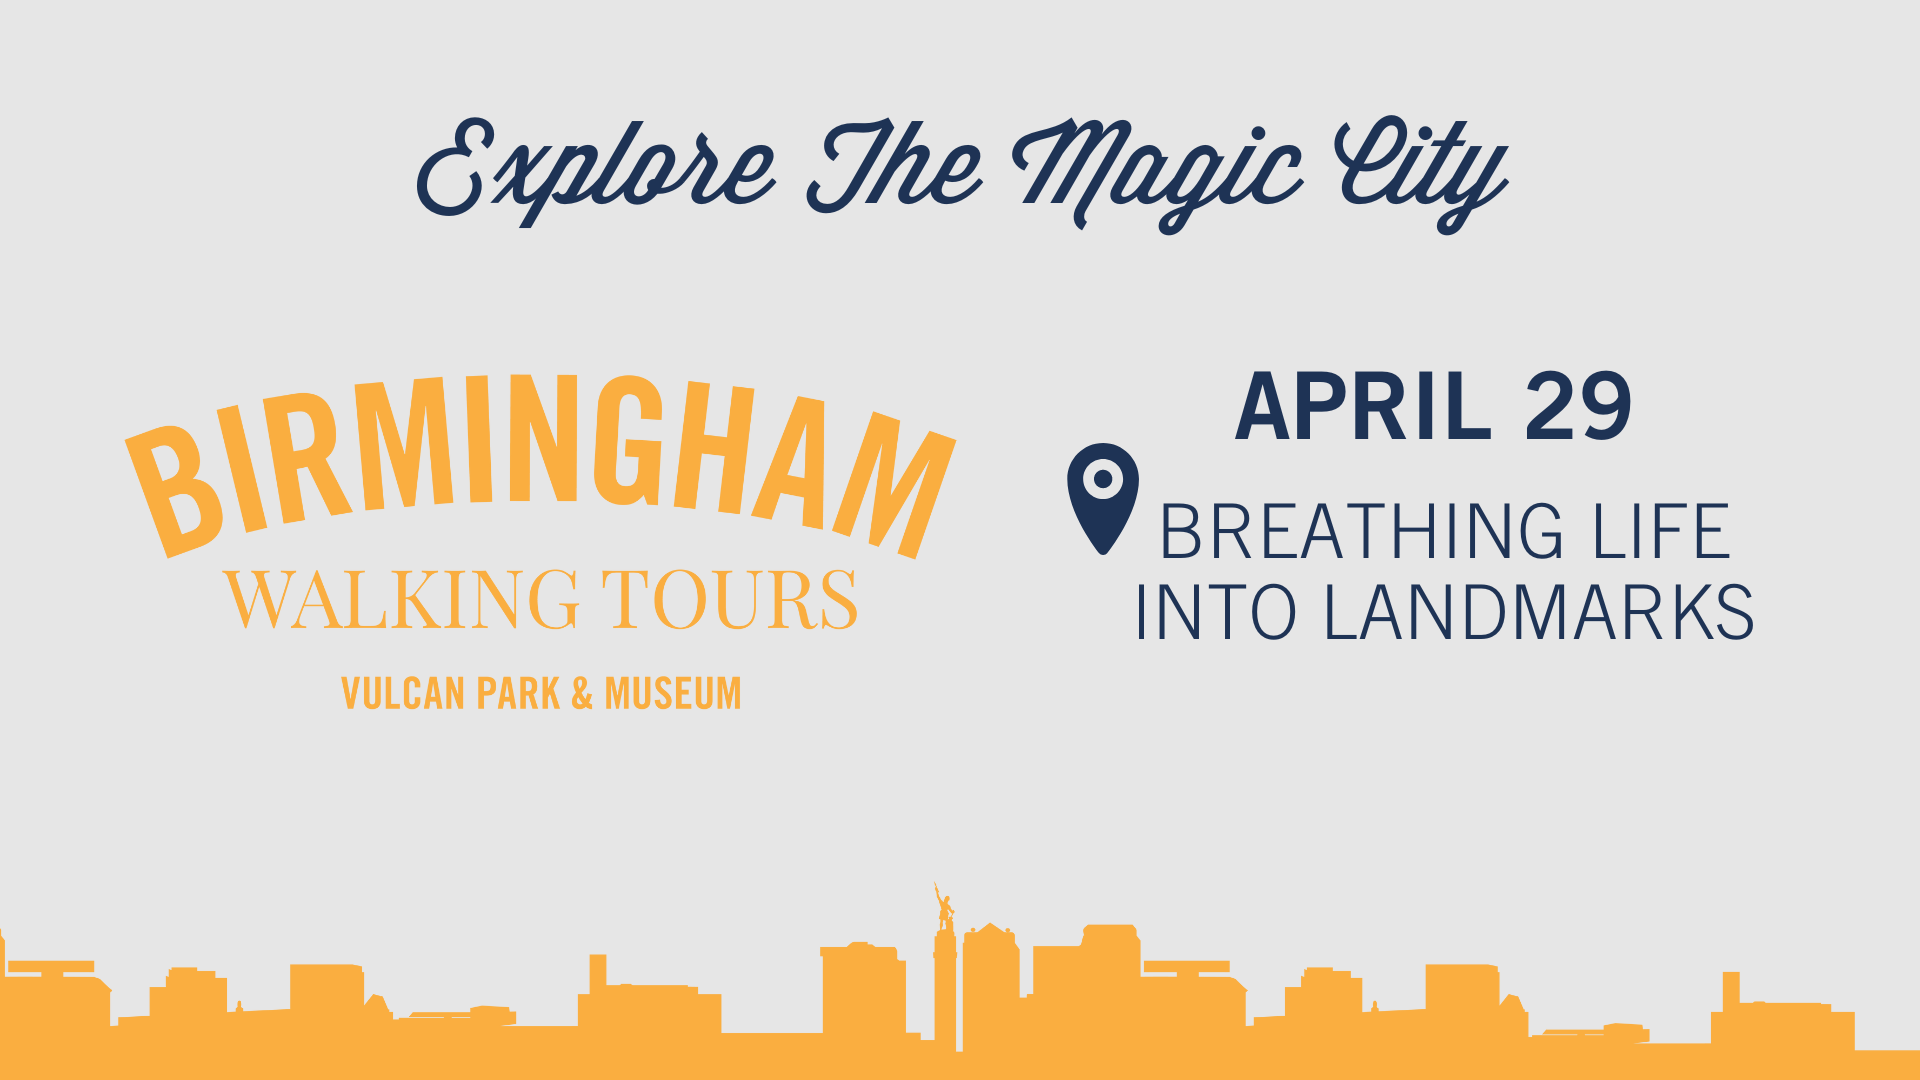 Birmingham Walking Tour: Breathing Life into Landmarks